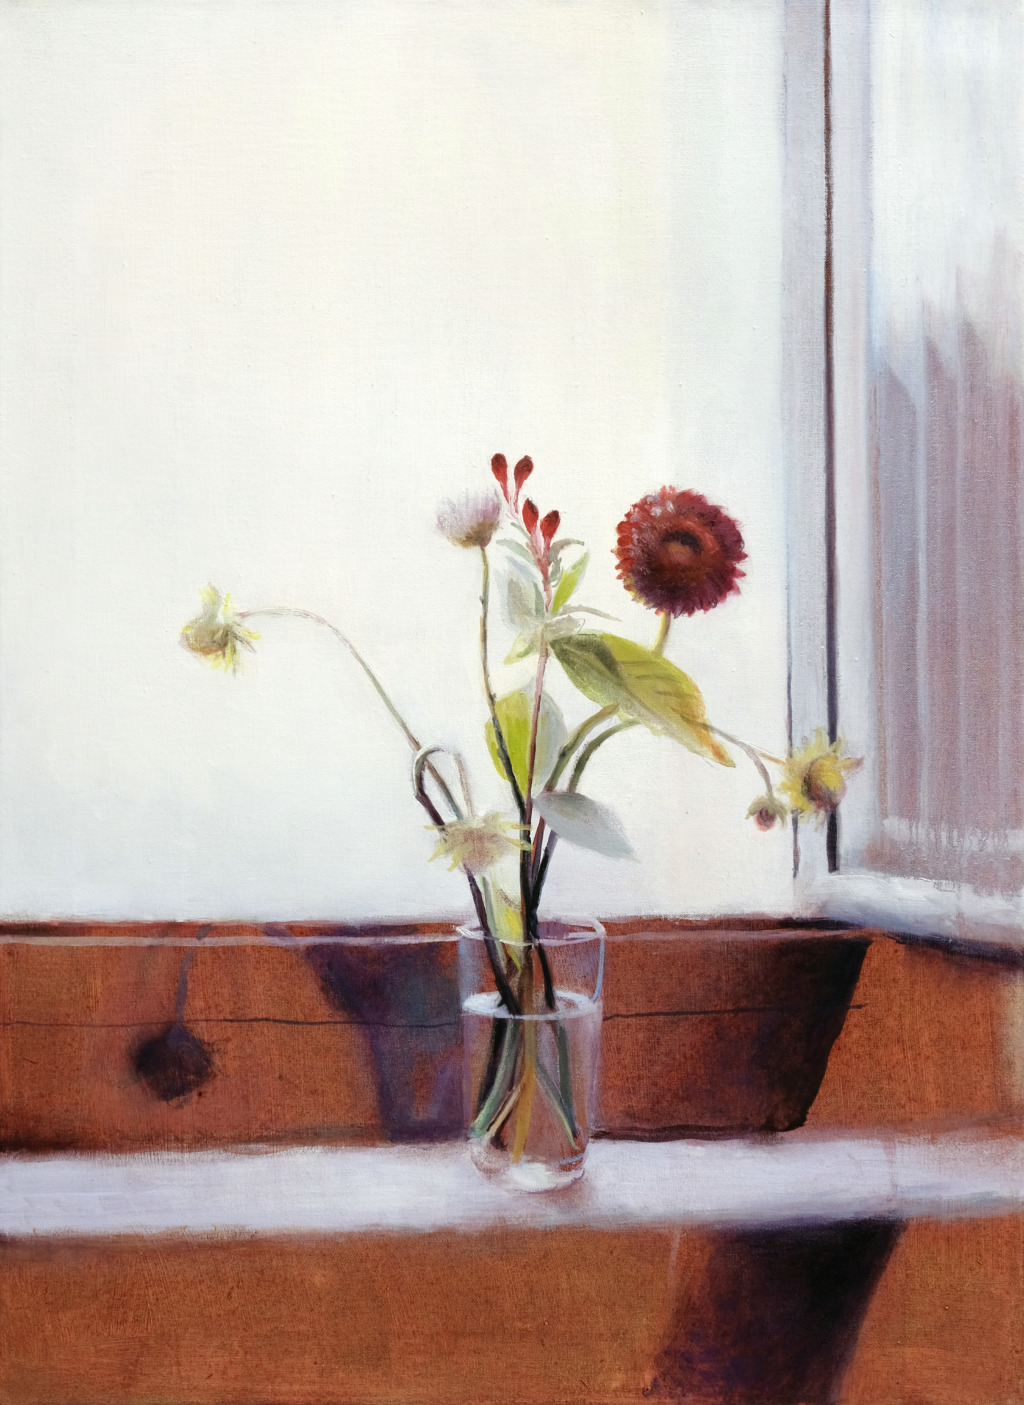 Andrea Muheim, Schon wieder Herbst l, 2021
Oil on canvas
69 x 50 cm